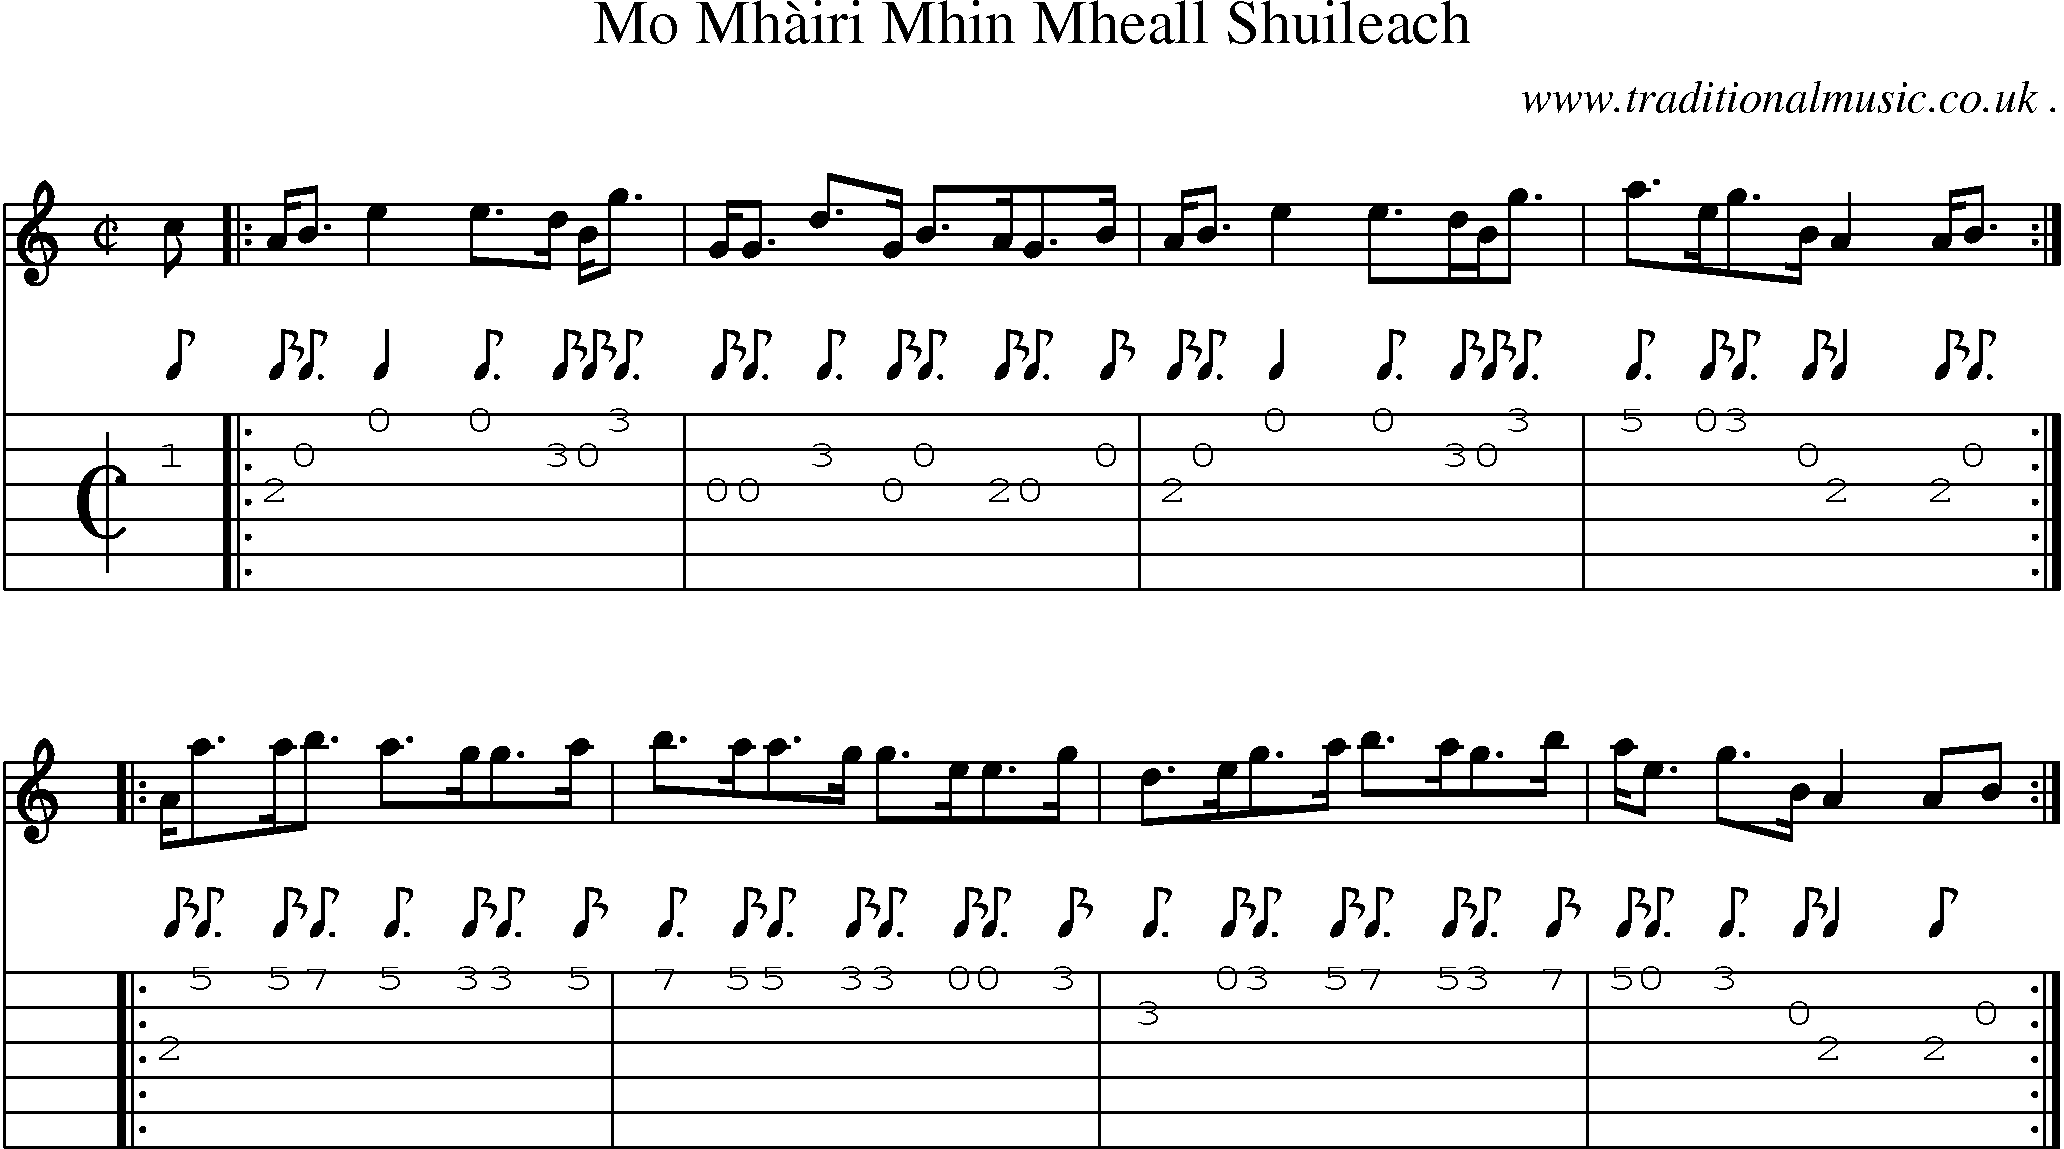 Sheet-music  score, Chords and Guitar Tabs for Mo Mhairi Mhin Mheall Shuileach